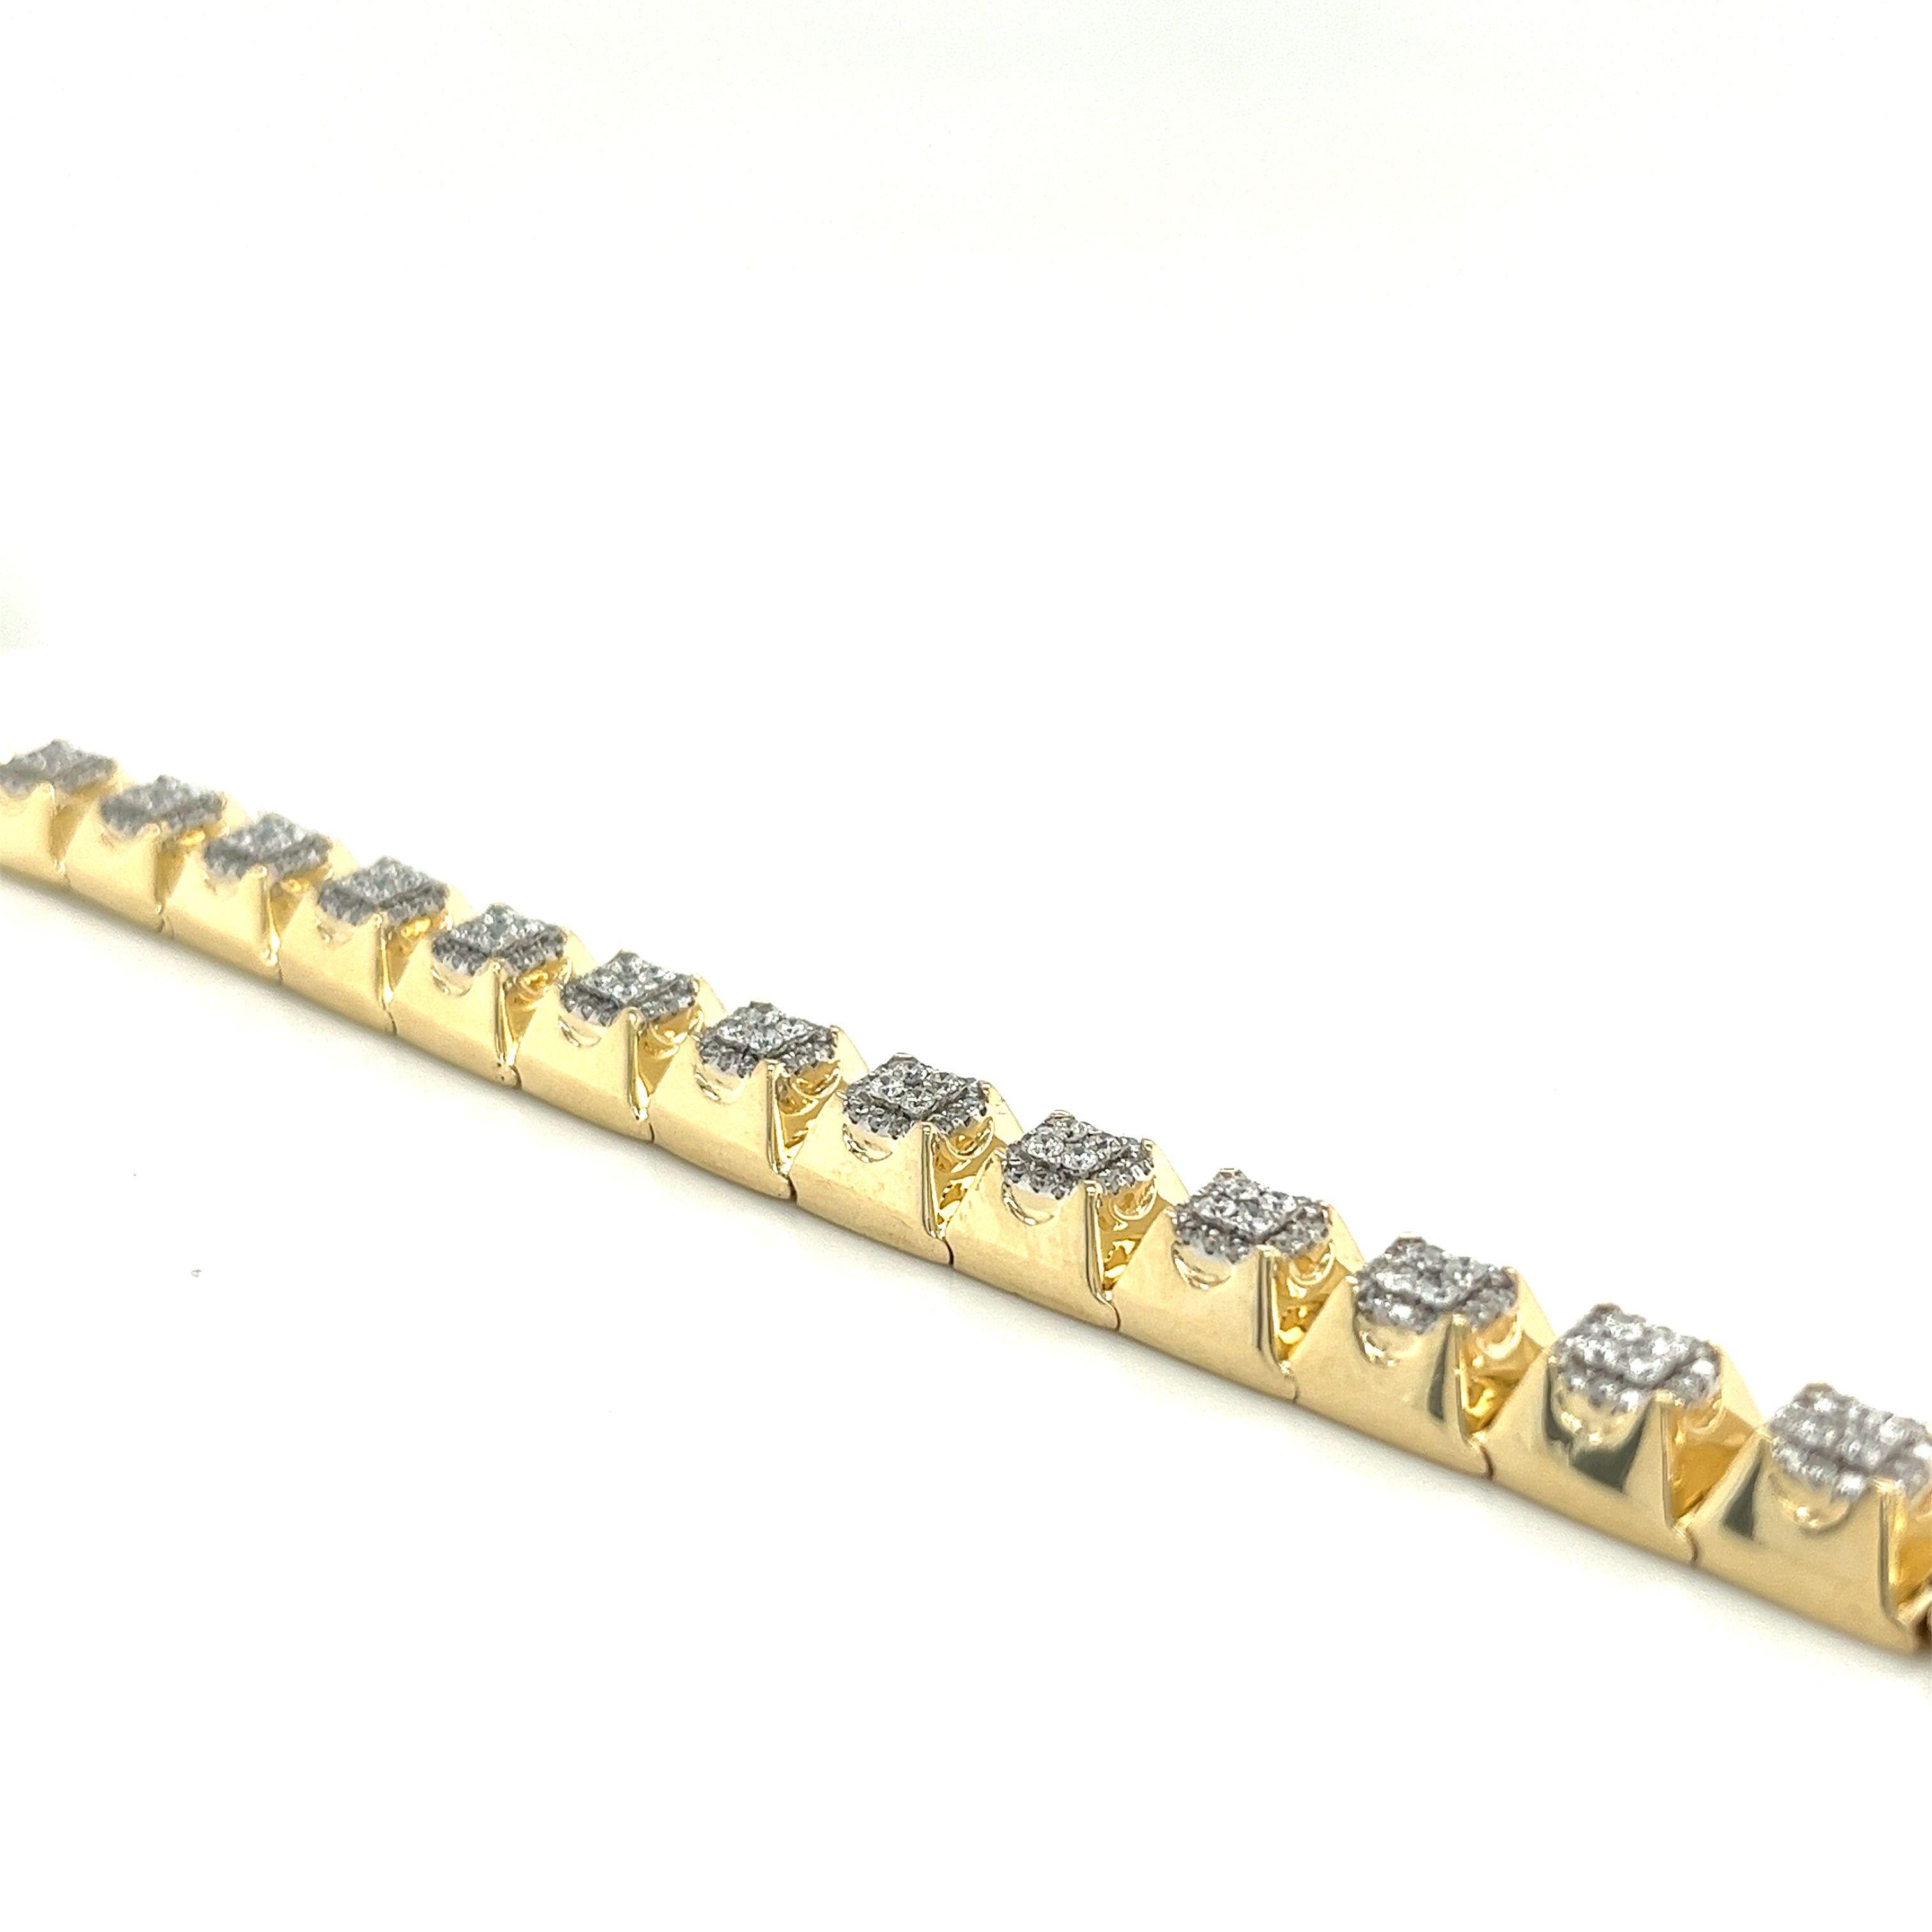 Dieses Goldarmband ist aus kontrastreichem, zweifarbigem 14-karätigem Gold gefertigt. Echtes 14-karätiges Gelbgold. NICHT plattiert, NICHT gefüllt und NICHT überlagert. Professionell getestet und gestempelt 14K. Extrem haltbar mit einer brandneuen